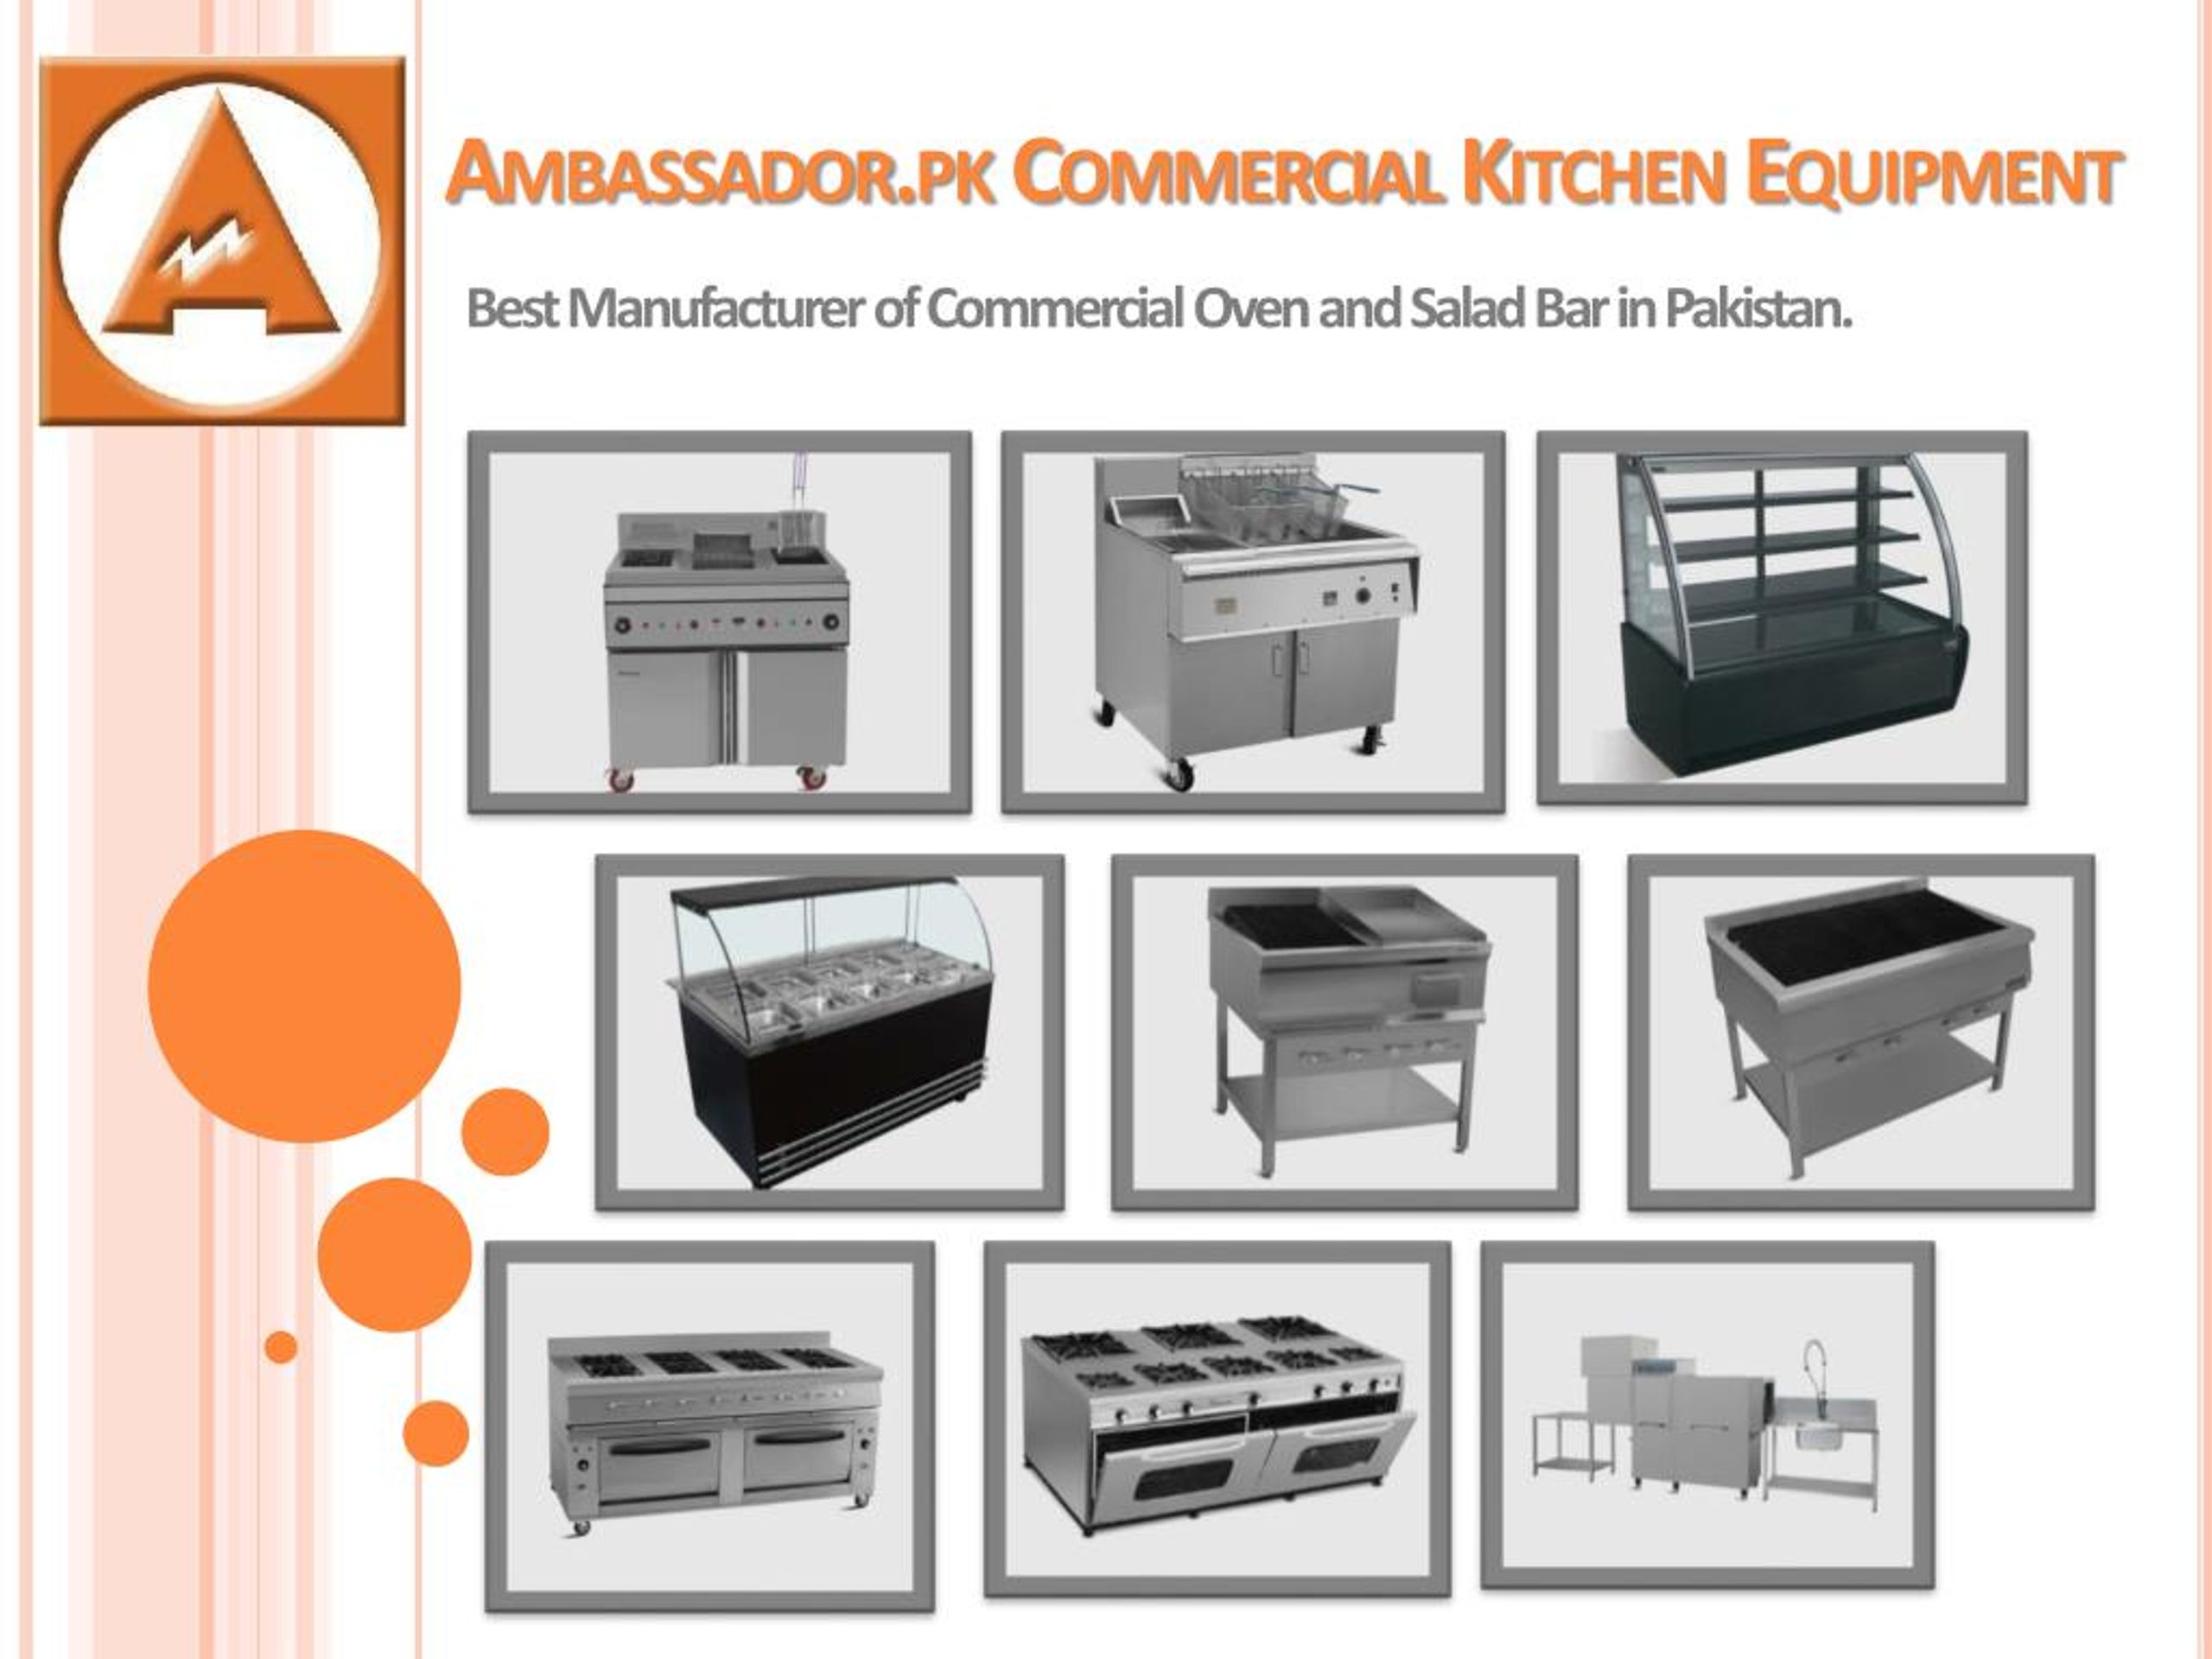 https://image4.slideserve.com/7778262/ambassador-pk-commercial-kitchen-equipment-l.jpg